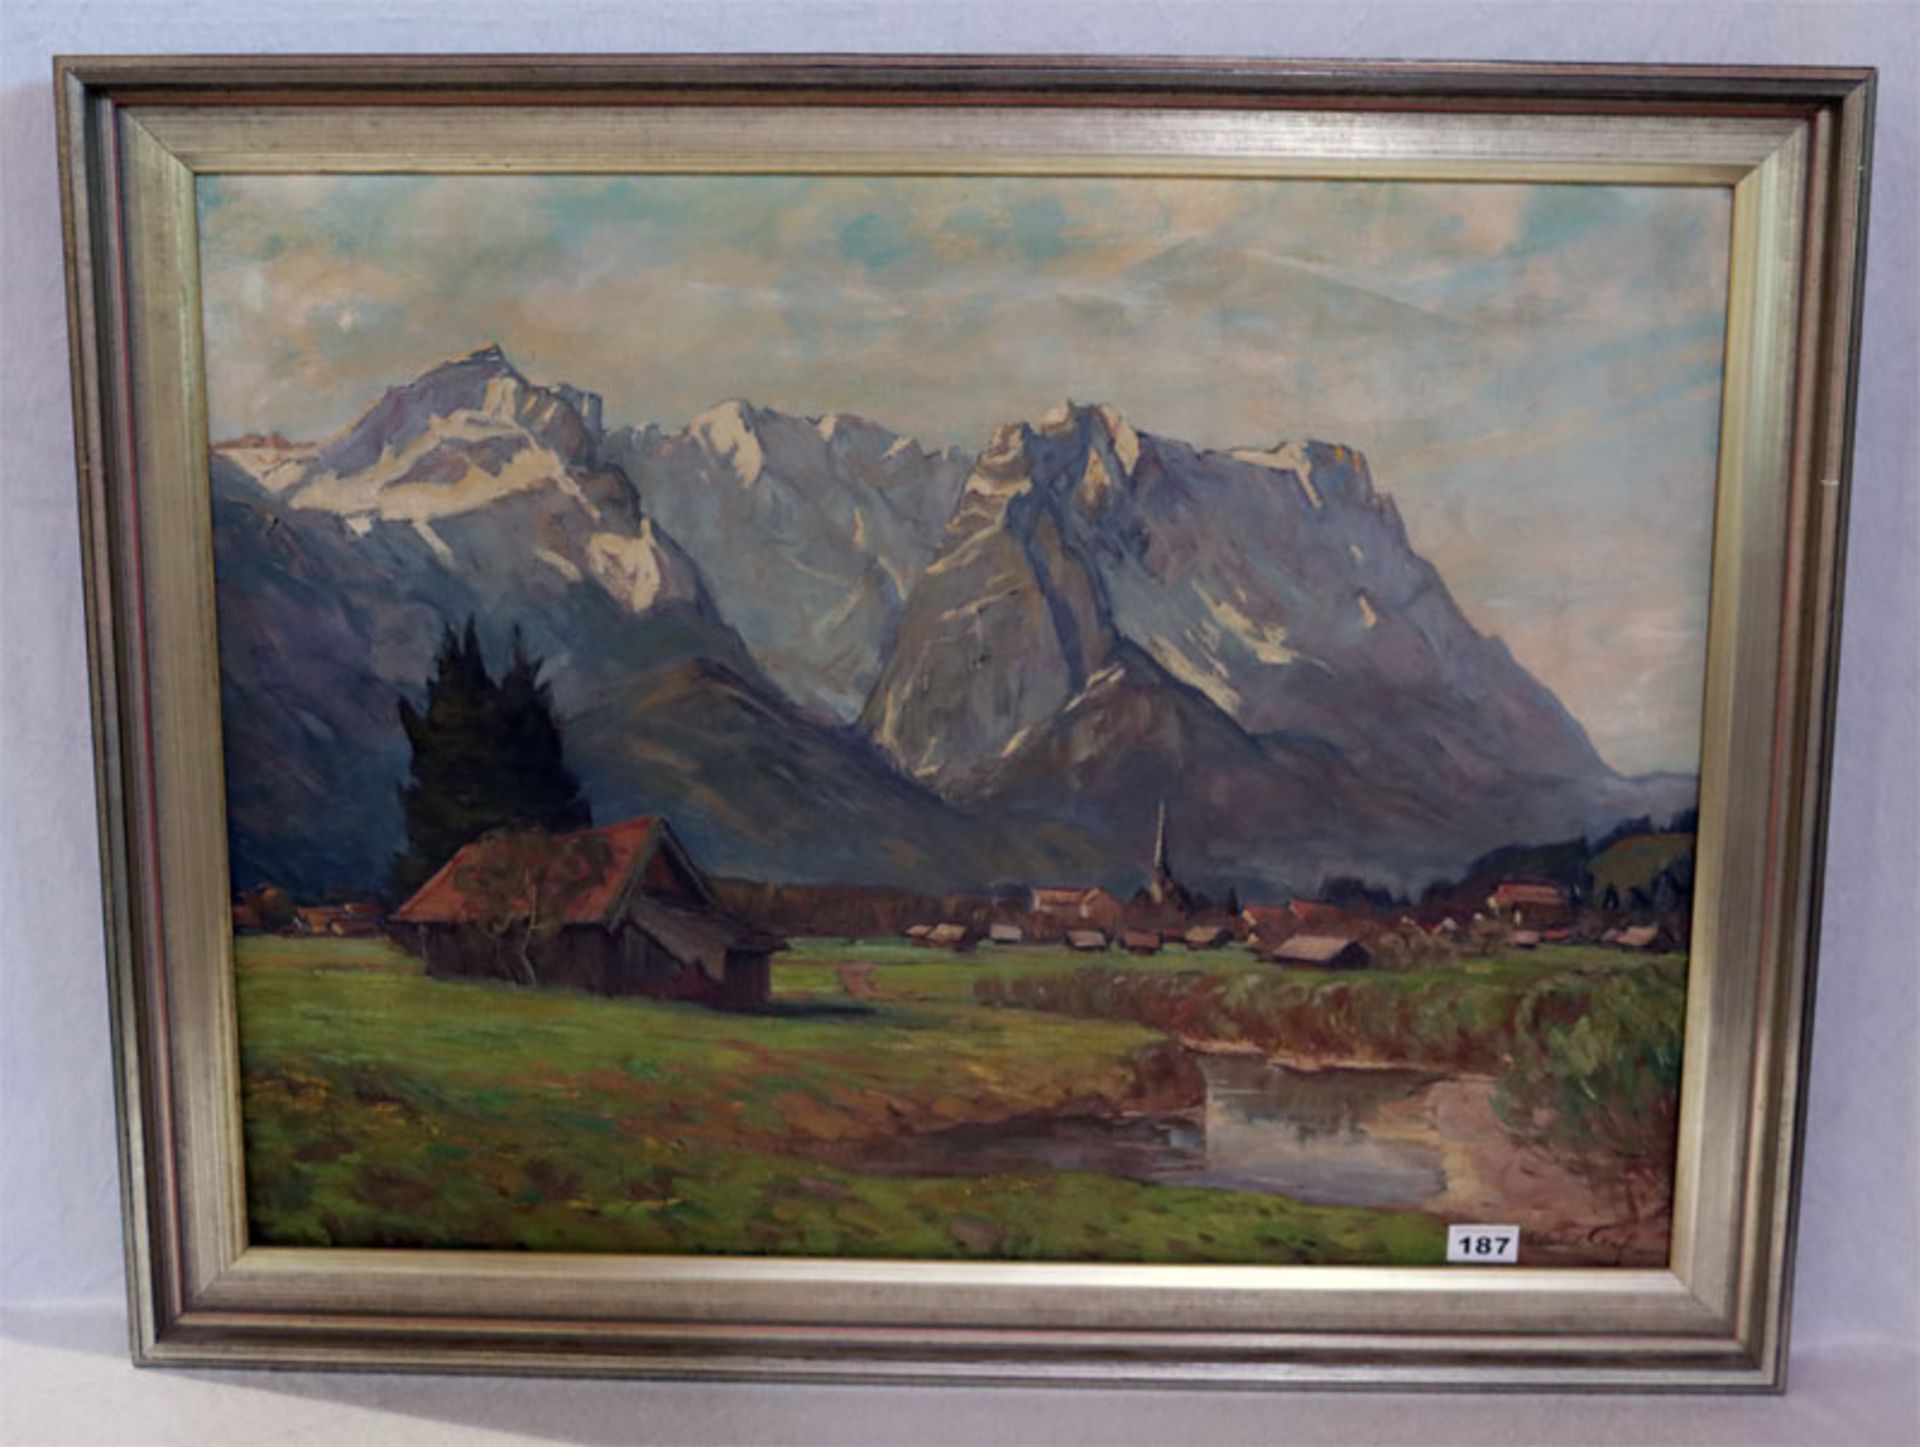 Gemälde ÖL/LW 'Garmisch vor Wettersteingebirge', signiert Edmund Senft, München, * 1880 + 1964